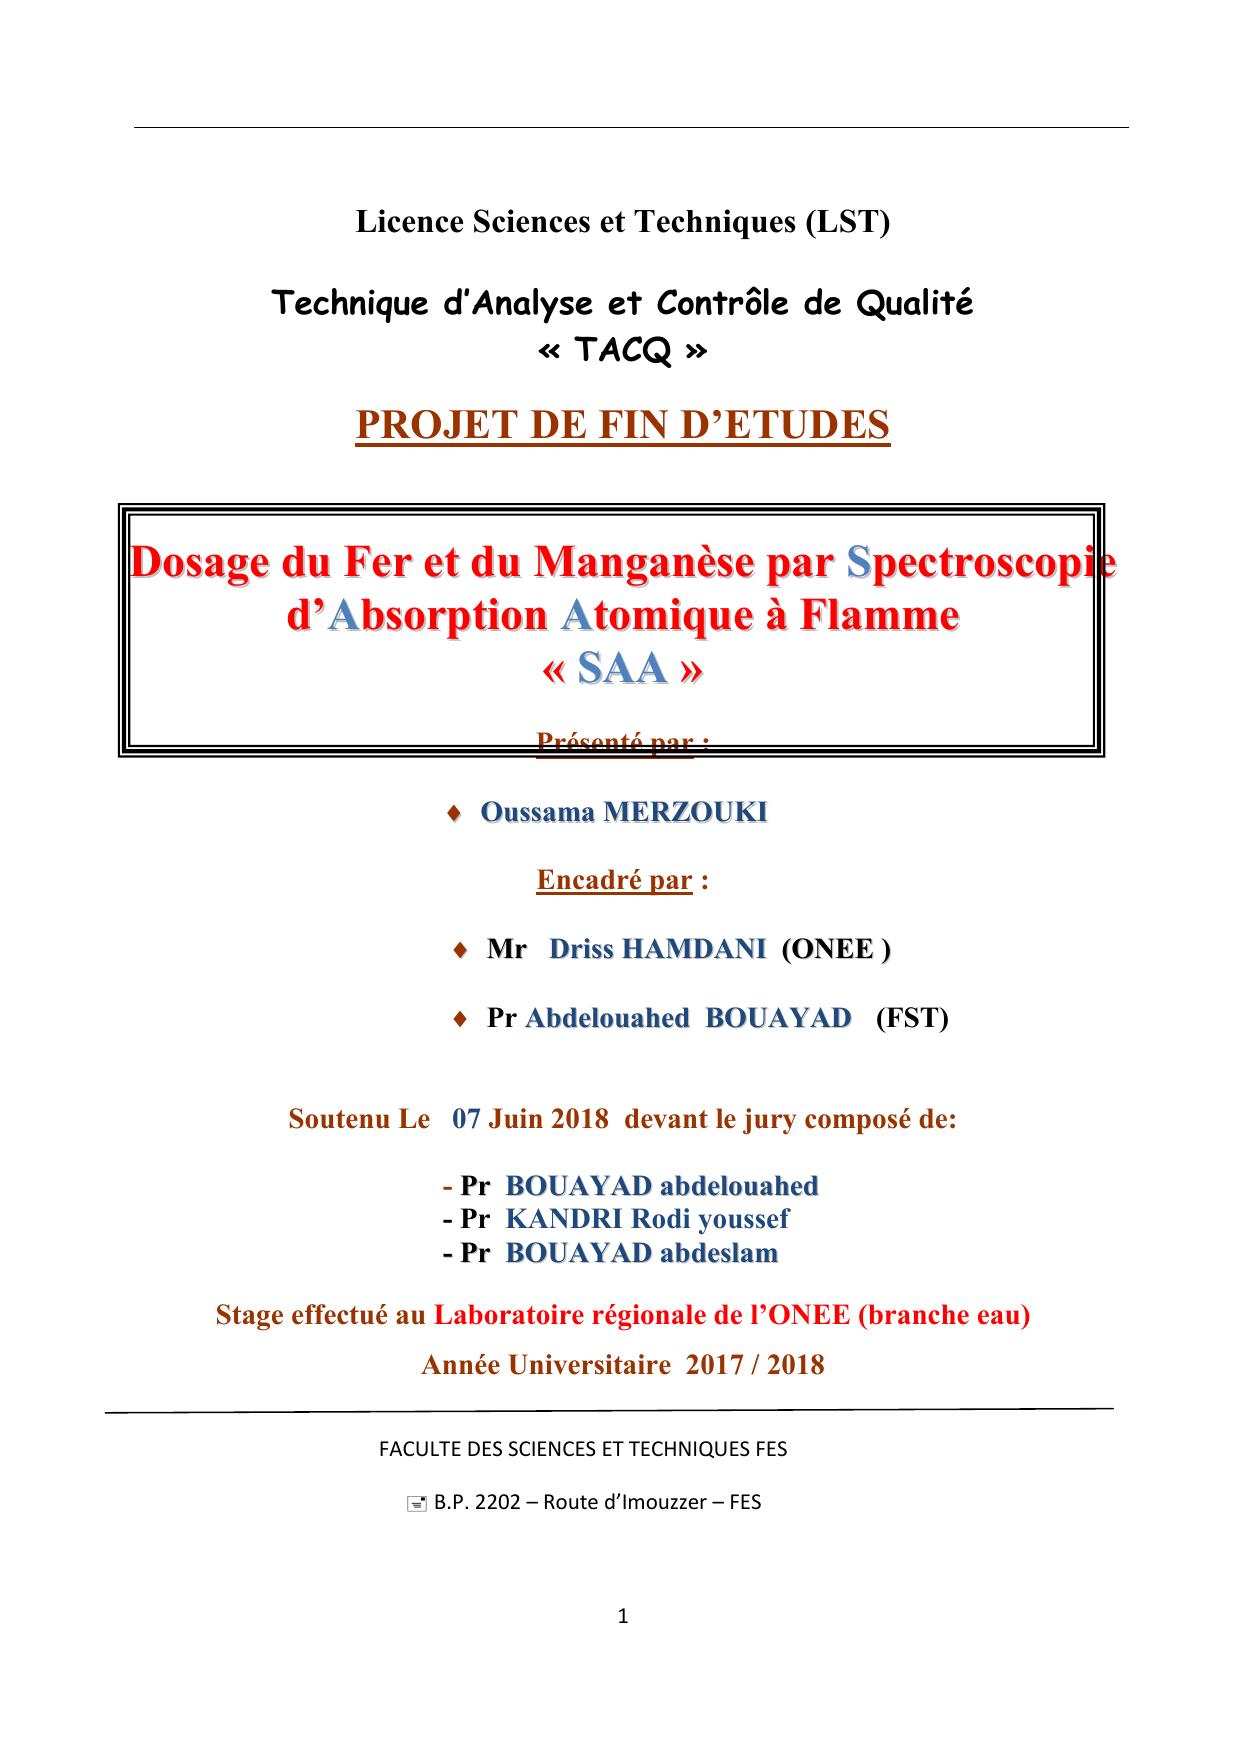 Dosage du Fer ett du Manganèse par Specttroscopiie d’’Absorpttiion Attomiique à Fllamme « SAA »